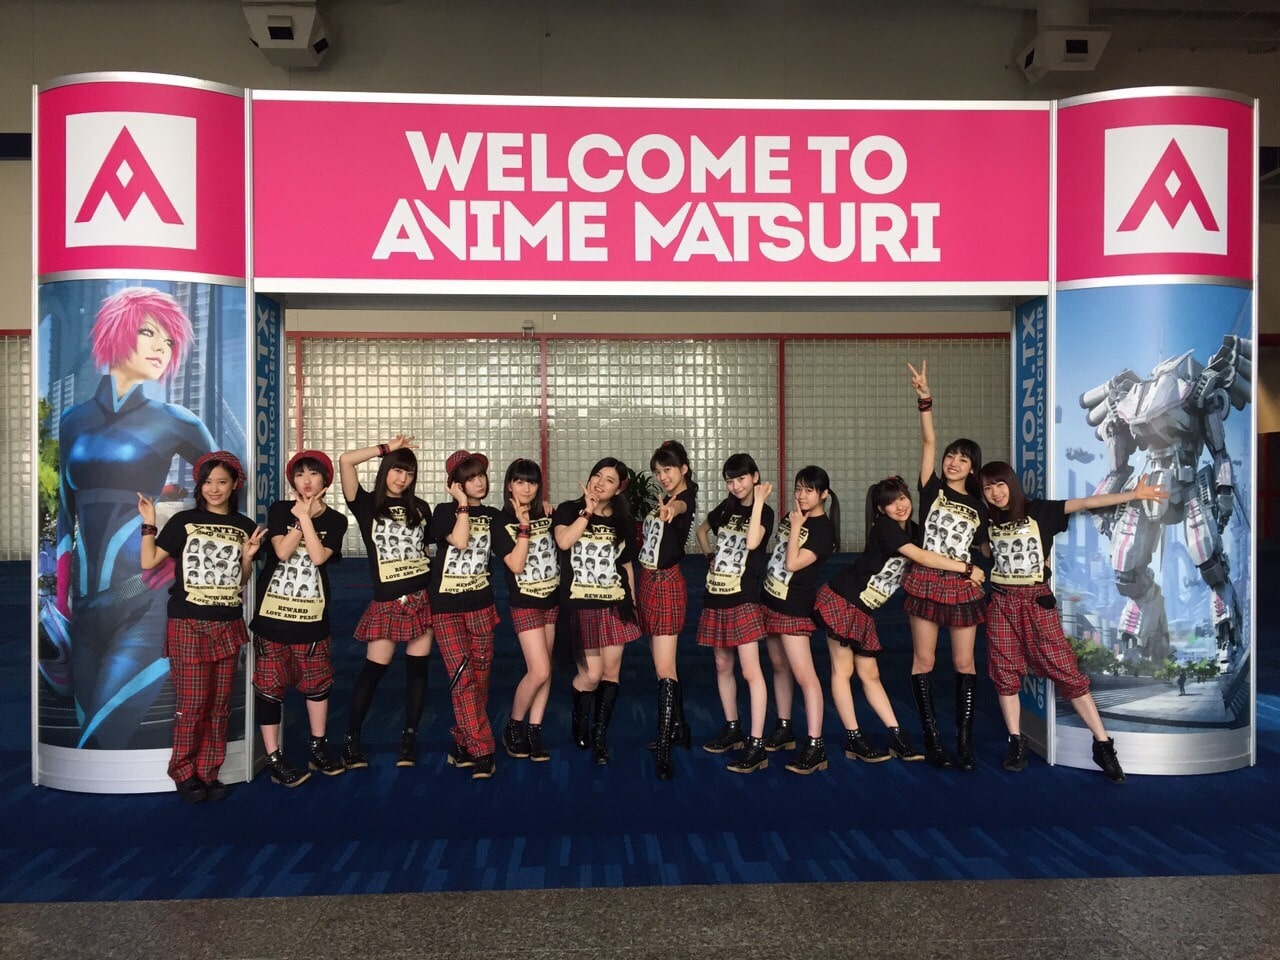 米・テキサス州ヒューストンで開催されたイベント「Anime Matsuri」にてライブを行った時のモーニング娘。 '16オフショット